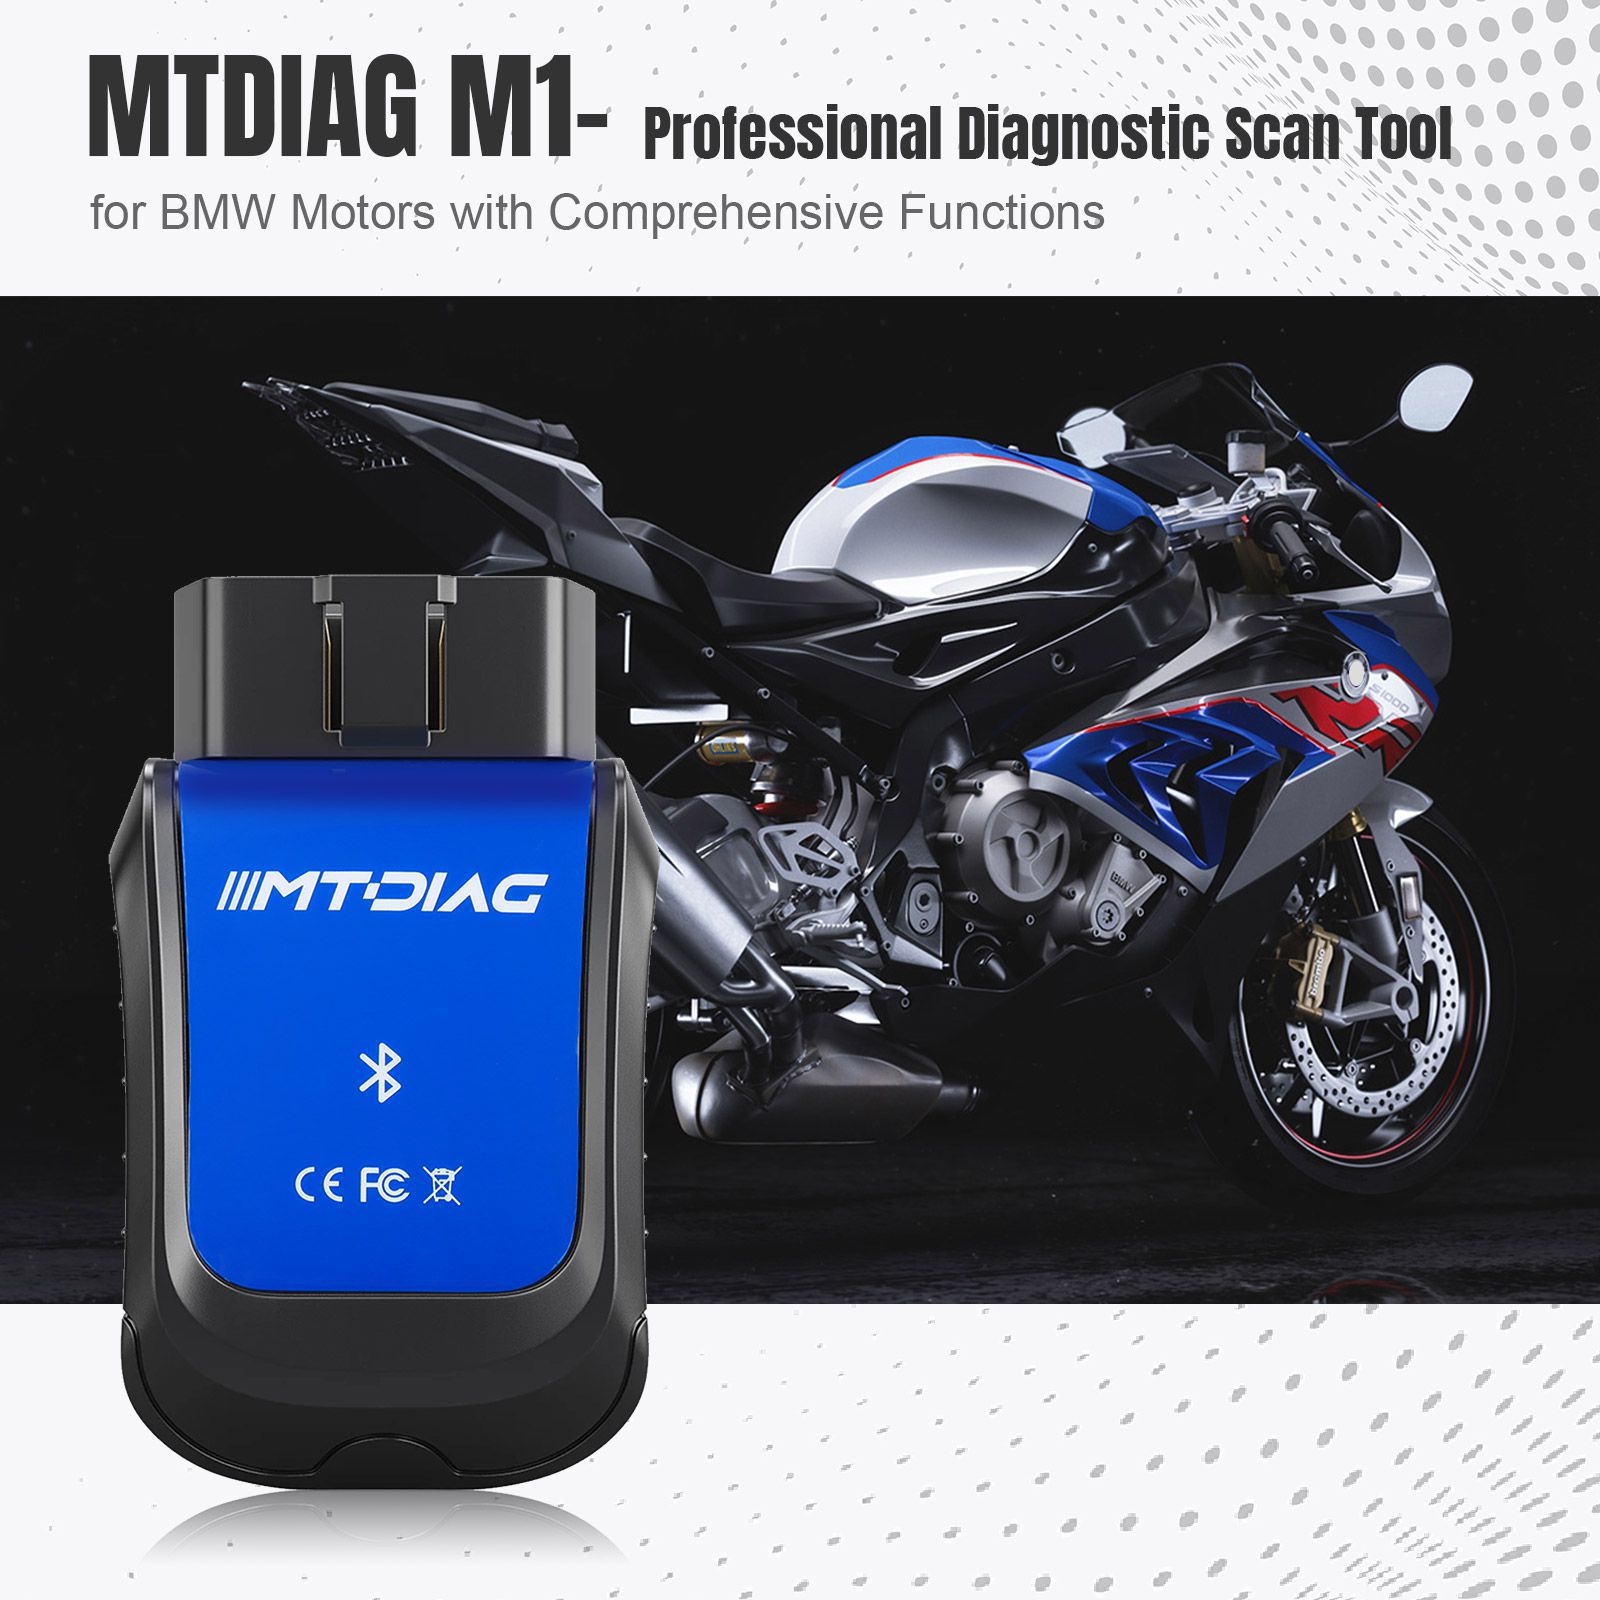 MTDIAG M1 Professional Diagnostic Scan Tool für BMW Motorrad mit umfassenden Funktionen Kundenspezifisches mobiles Diagnosegerät